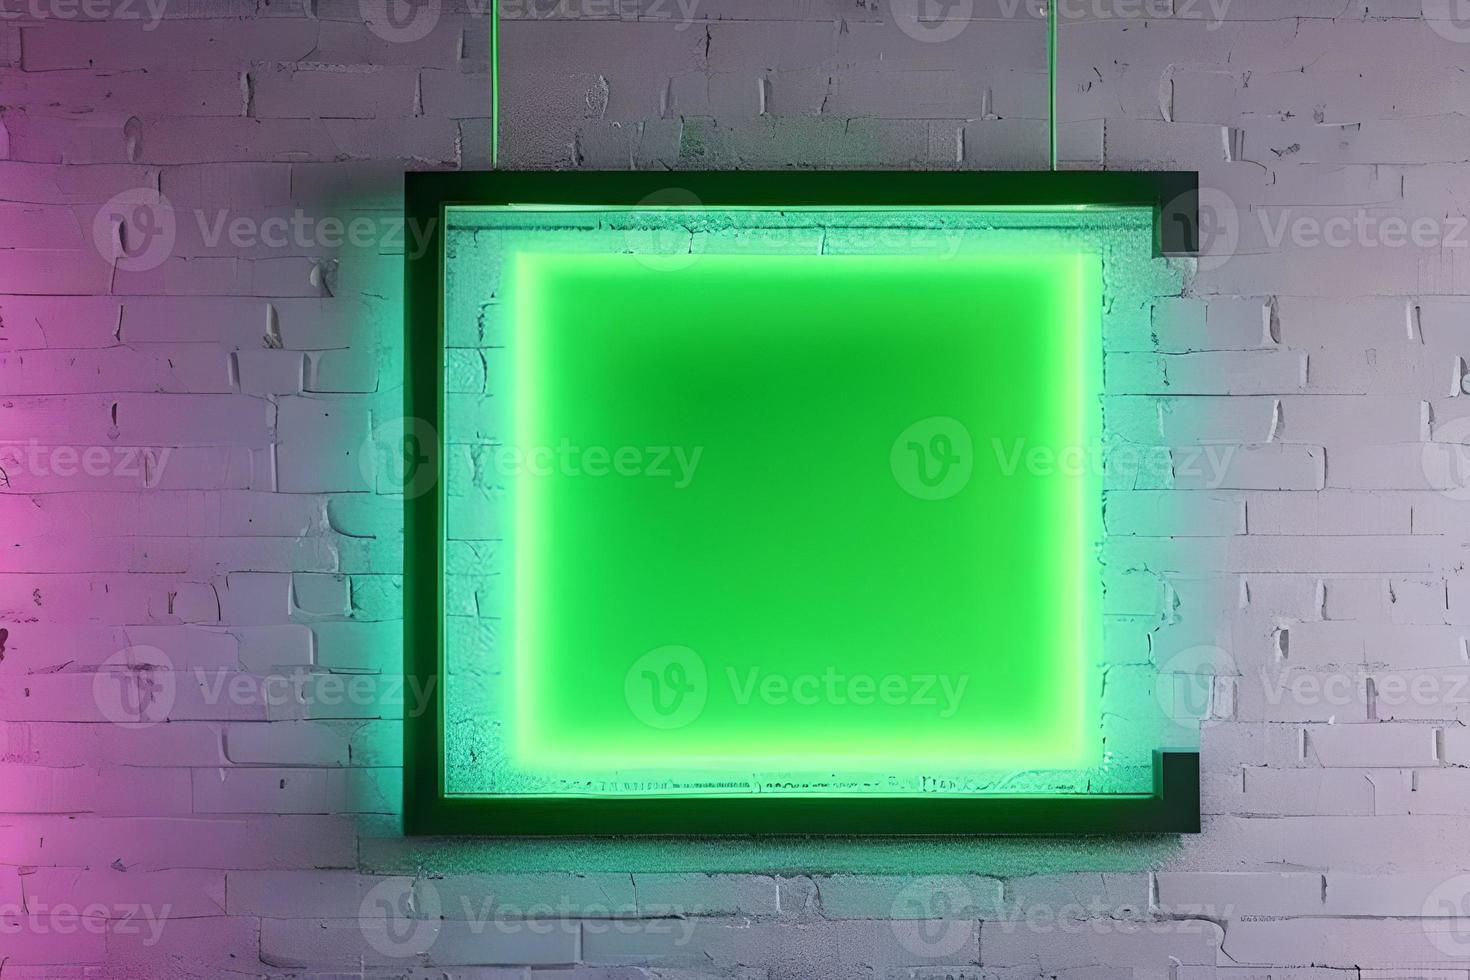 ljus grön rektangel neon på de vägg bakgrund och tegel bakgrund. foto